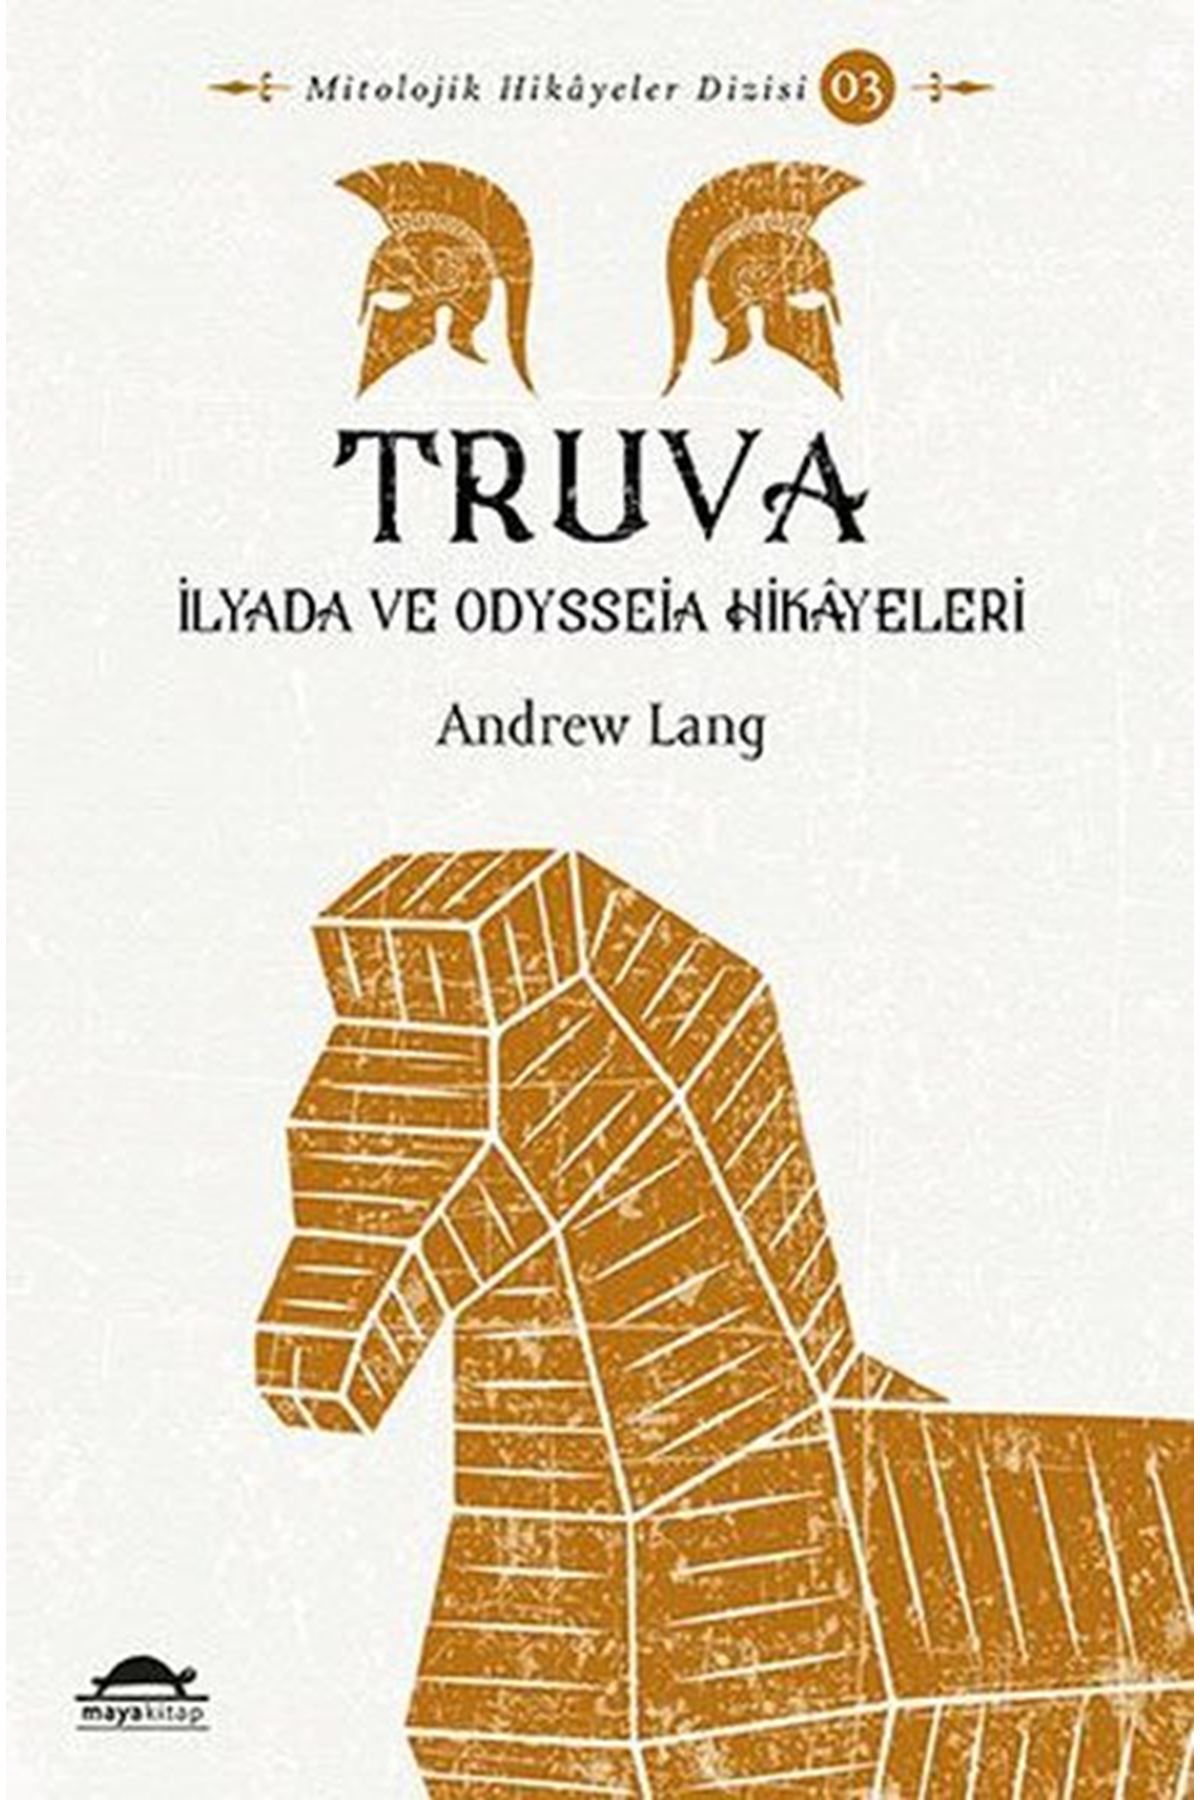 ANDREW LANG - TRUVA